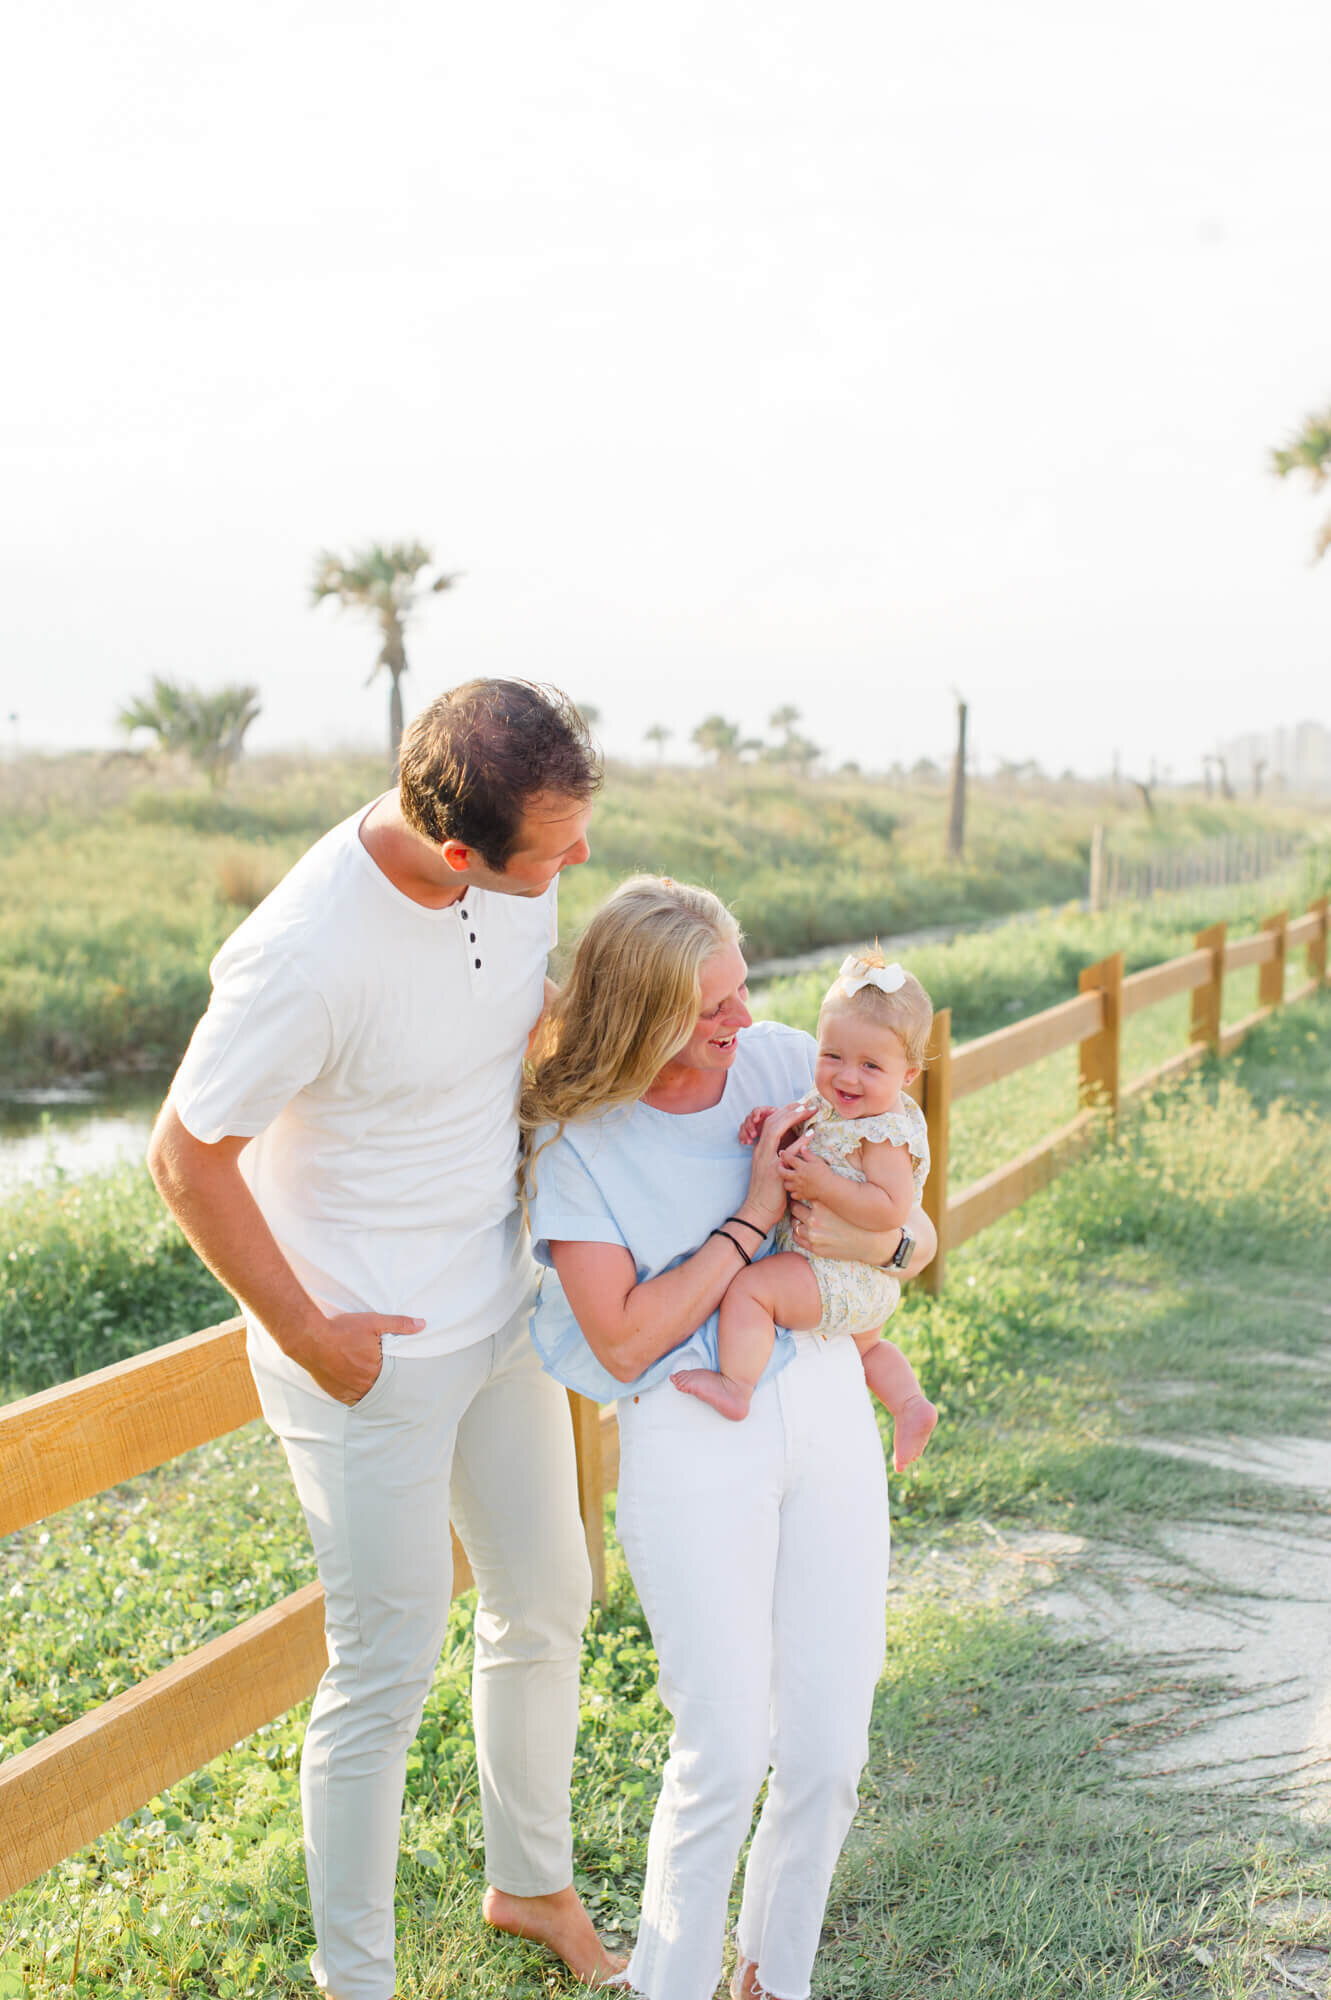 Vero Beach family photographer captures family tickling young daughter near Vero Beach